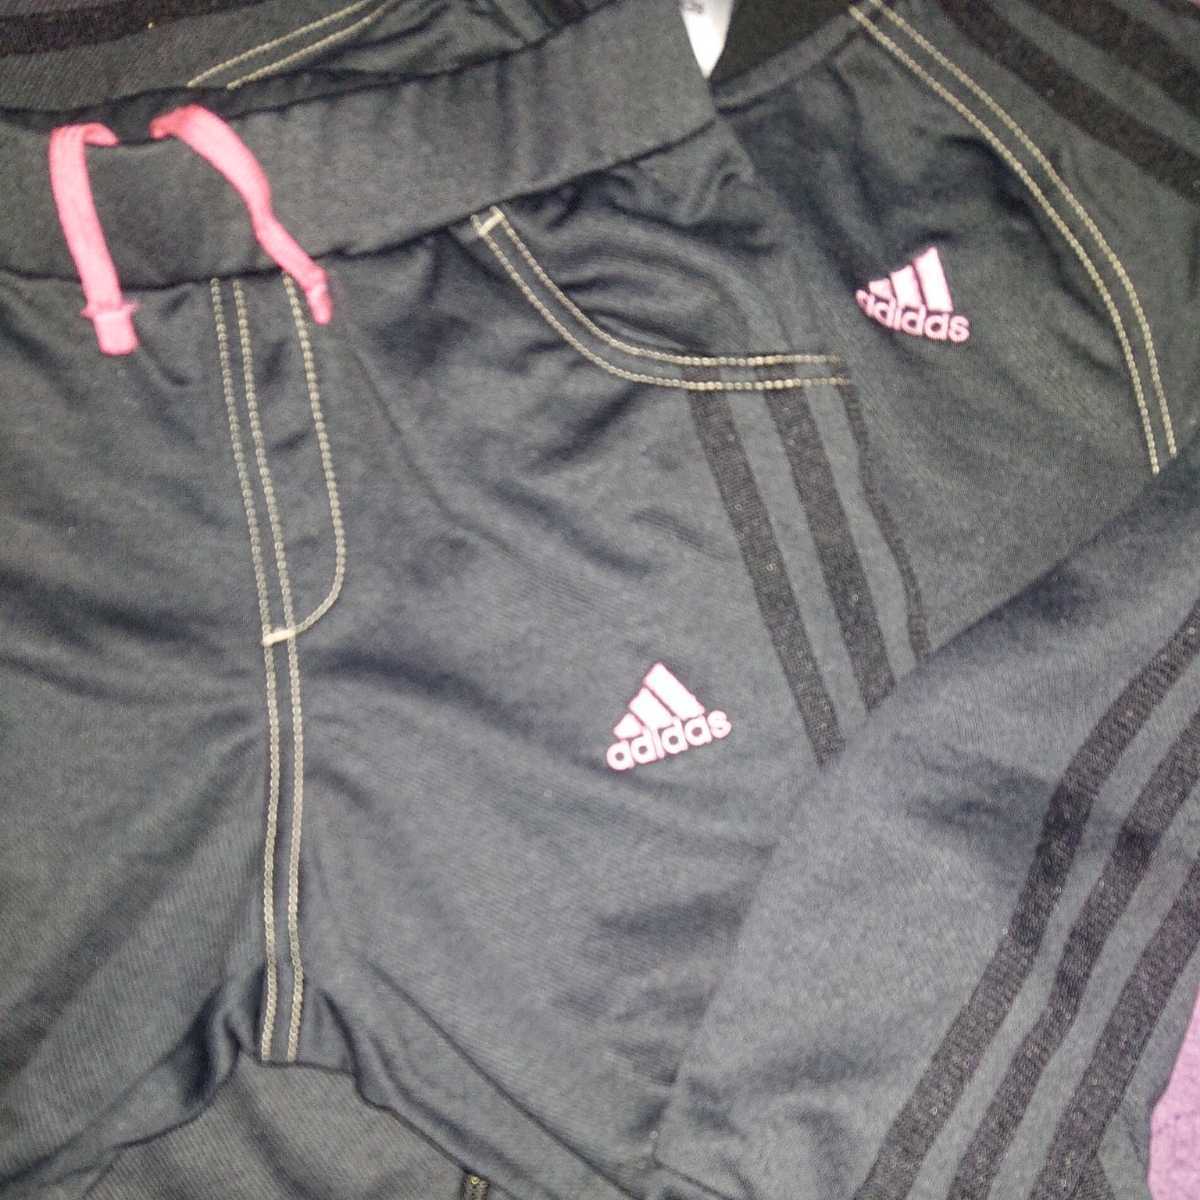  Adidas adidas угольно-серый × чёрный линия розовый Logo 140 130 верх и низ в комплекте выставить джерси 